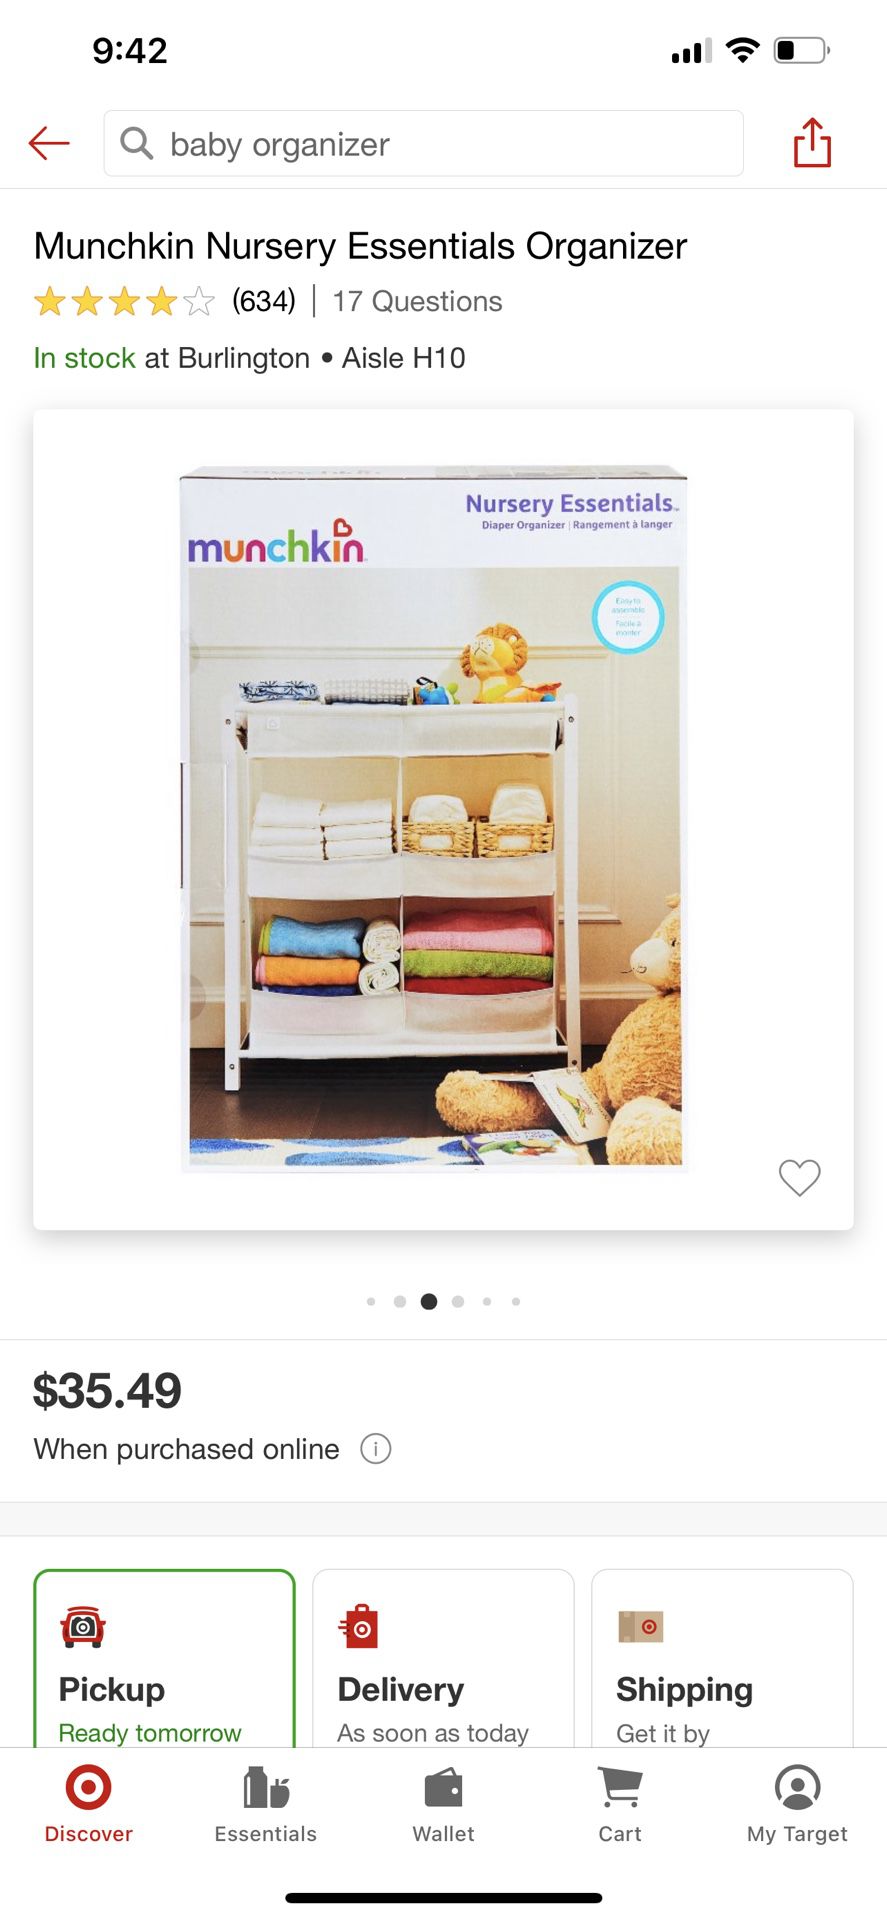 Munchkin Nursery Essentials Organizer